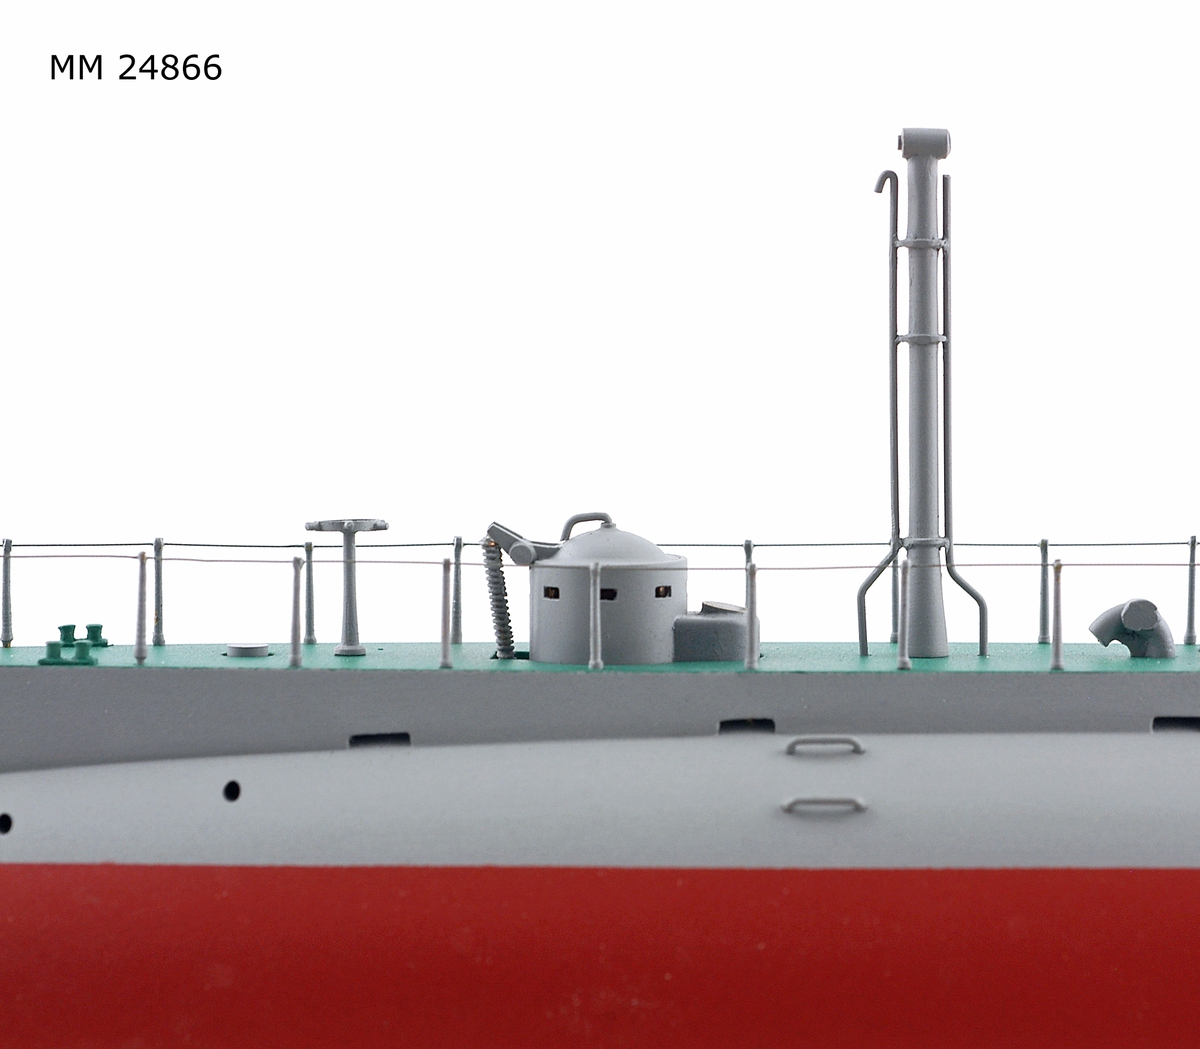 Ubåtsmodell Hajen i monter. Modell av alträ med detaljer av mässing, målad med cellulosafärg. Rött och grått skrov. Monter av plexiglas på träplatta. Mässingsbricka i montern med uppgifter om modellen.